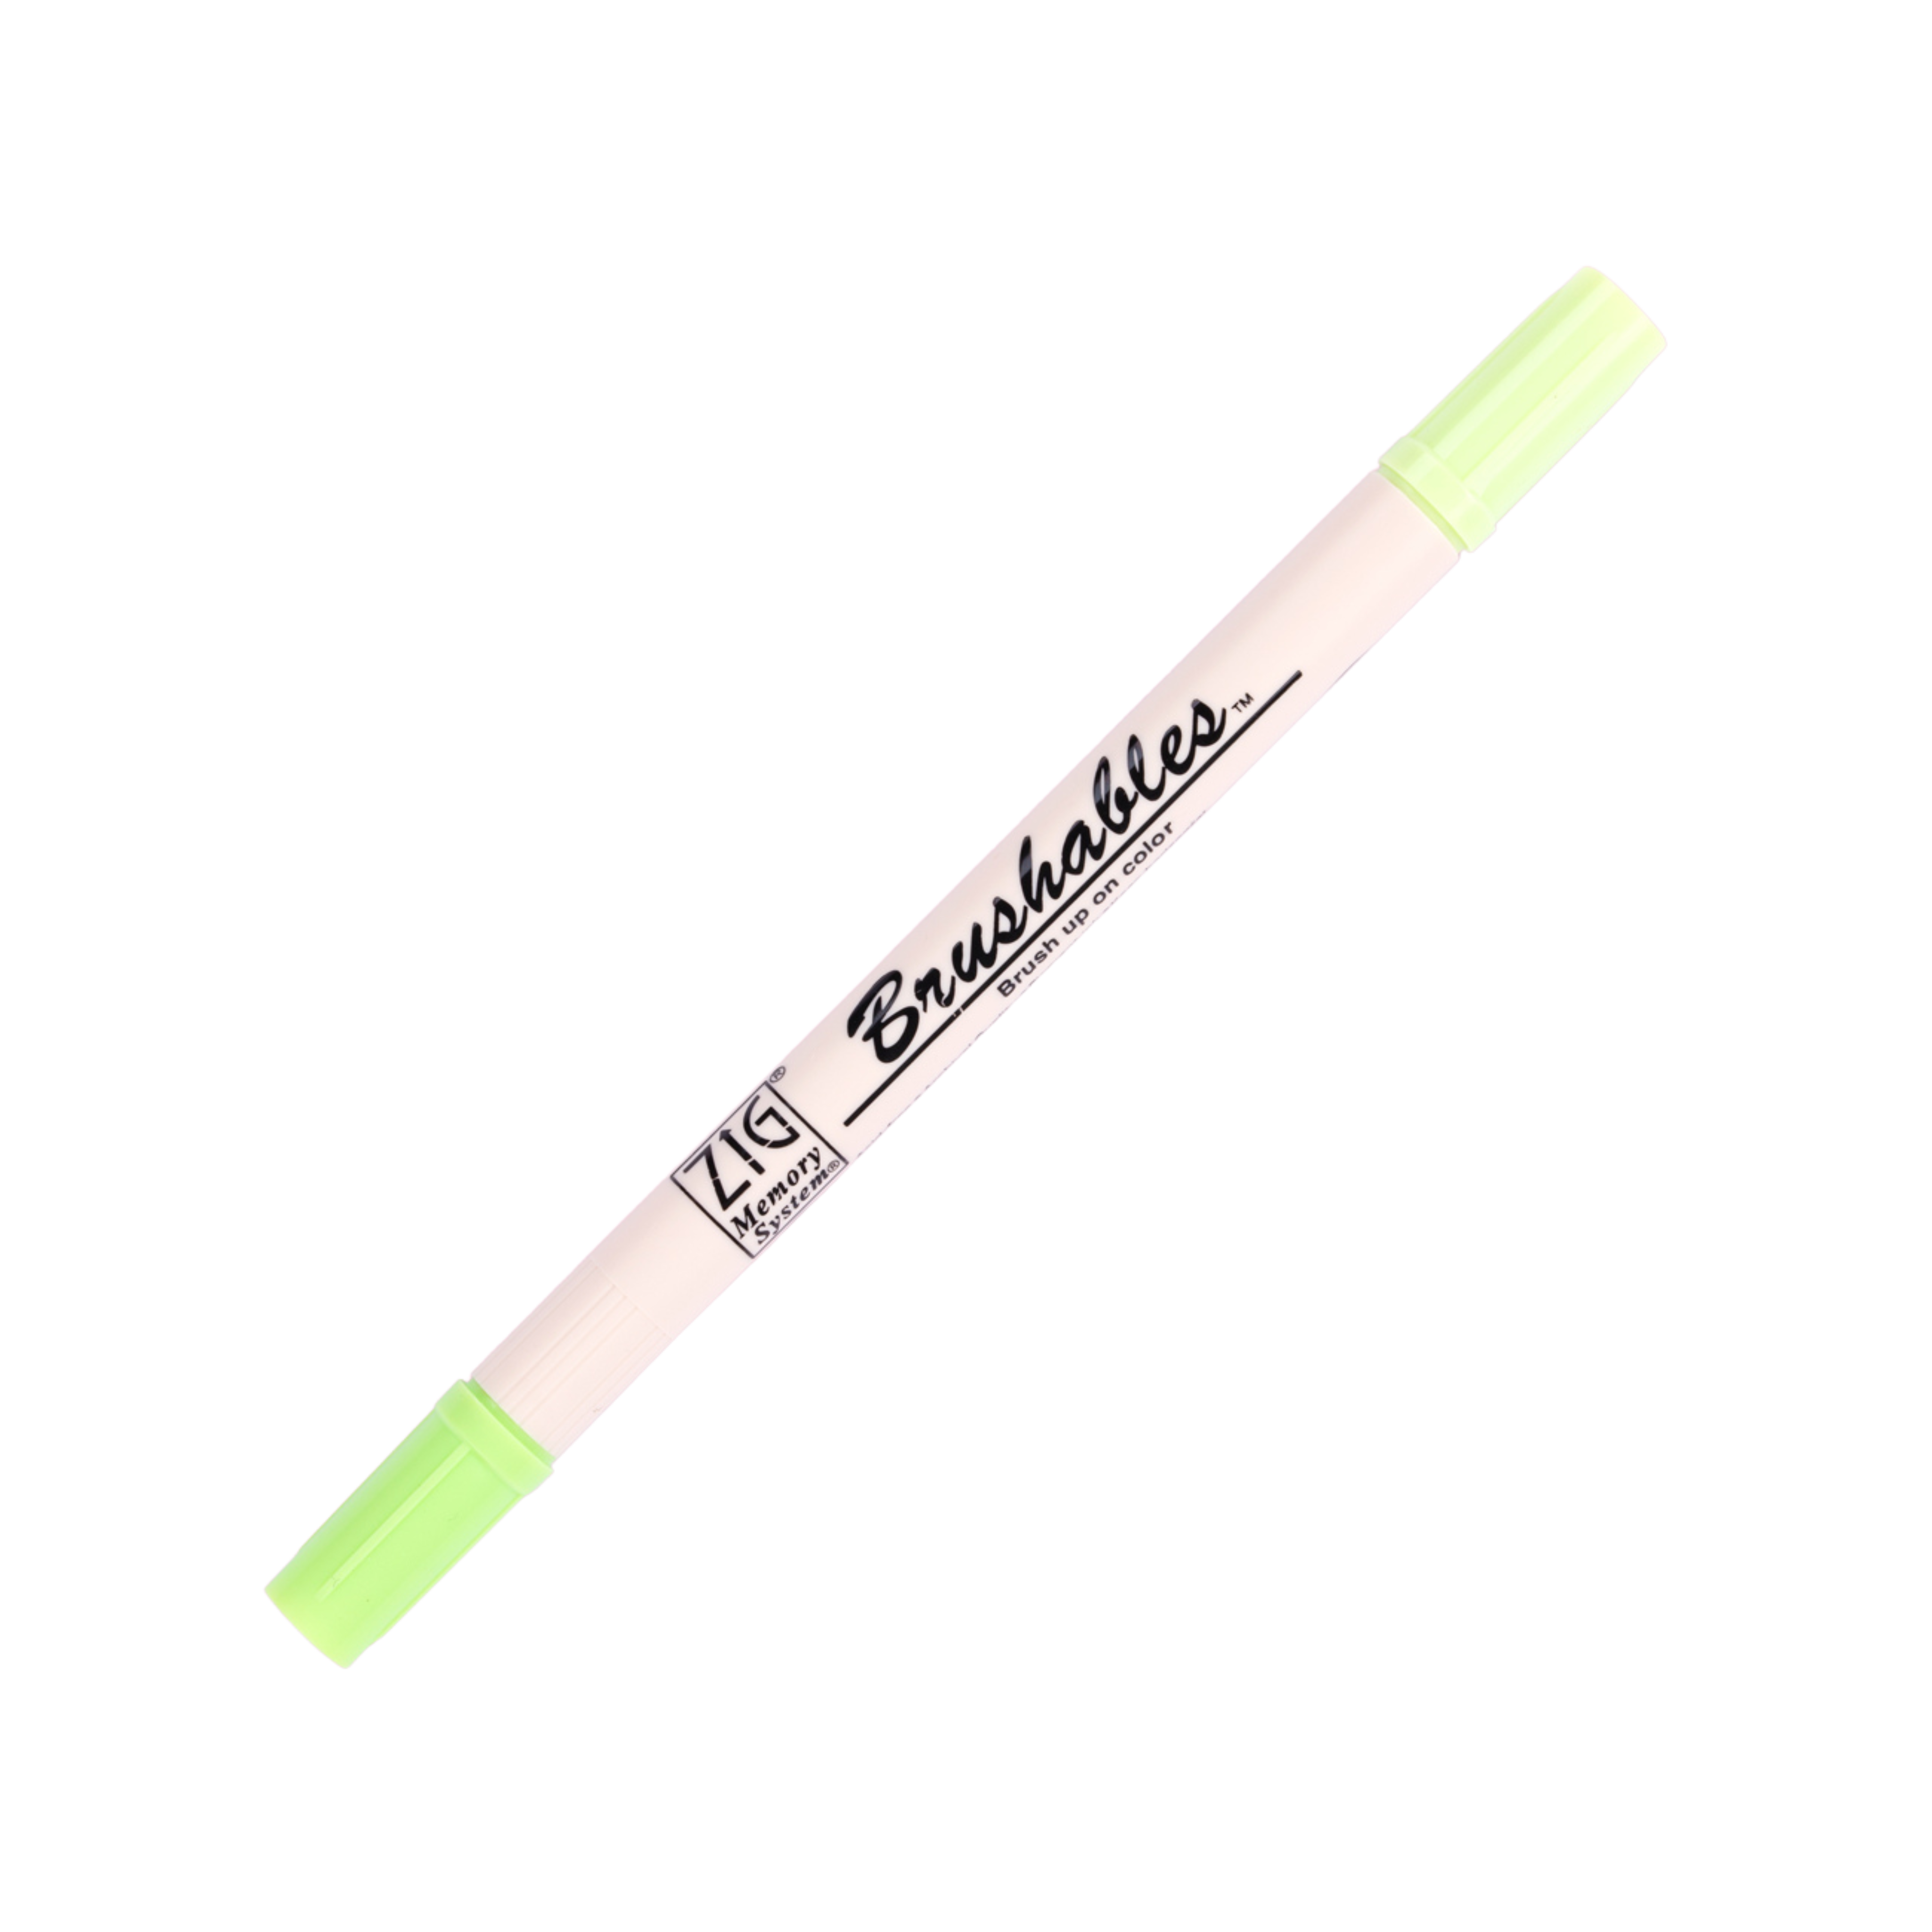 Kuretake Zig Brushables Brush Pen - Kiwi 402